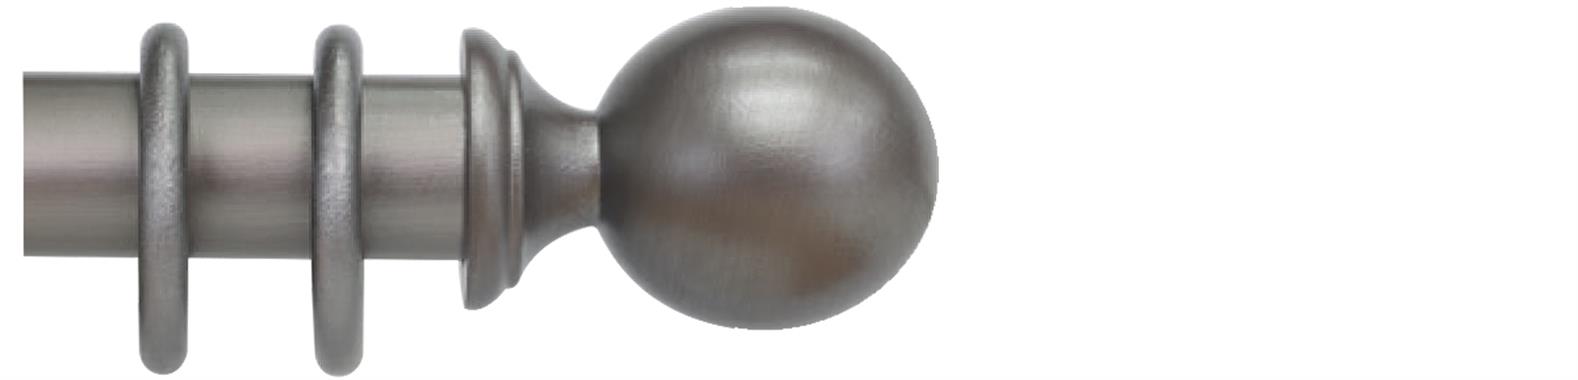 Cameron Fuller 35mm Pole Baroque Ball